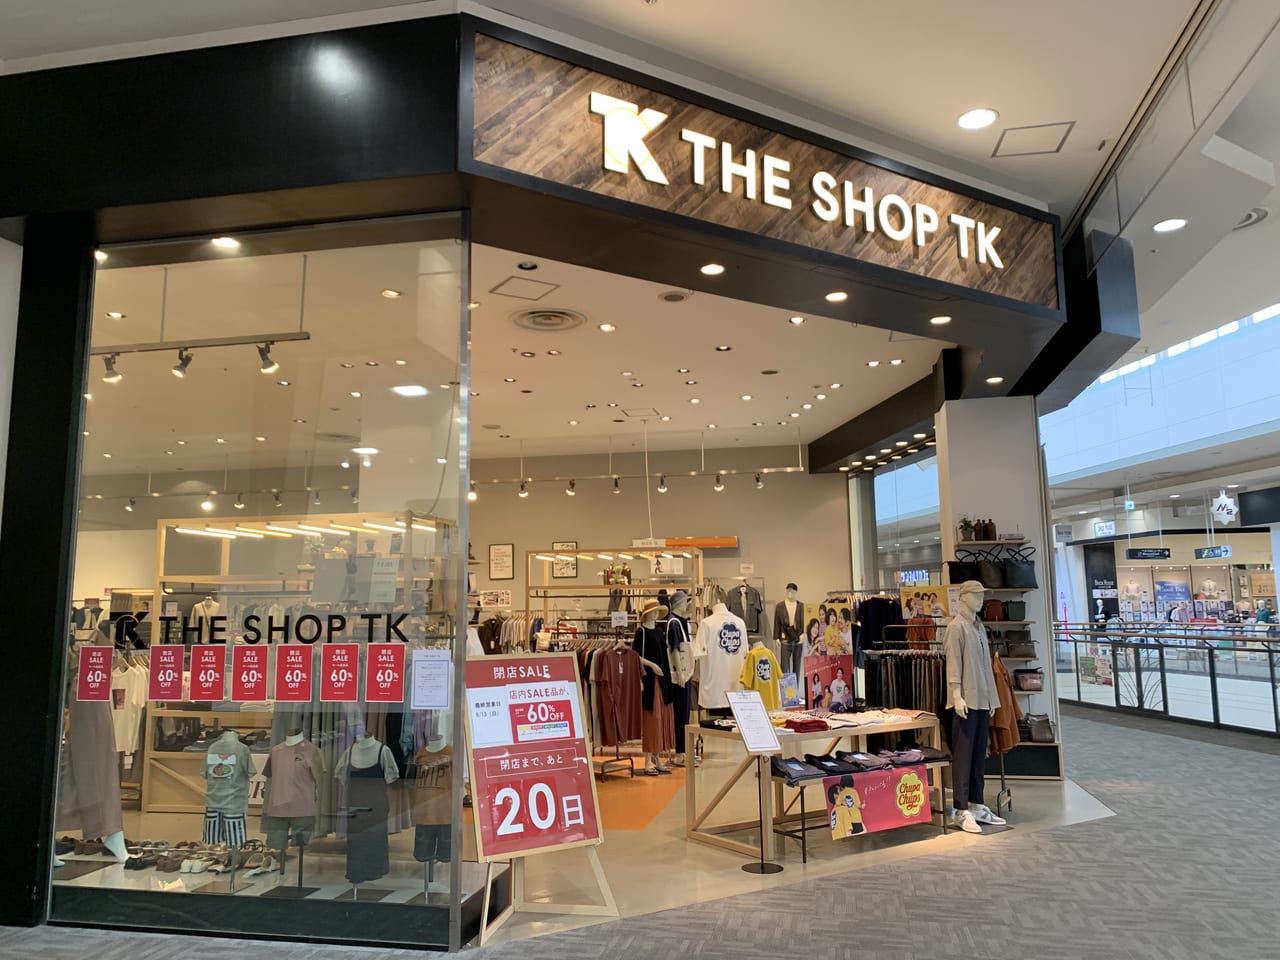 佐野市 The Shop Tkさんが6月13日 日 をもって閉店 現在 閉店セールを開催中です 号外net 足利市 佐野市